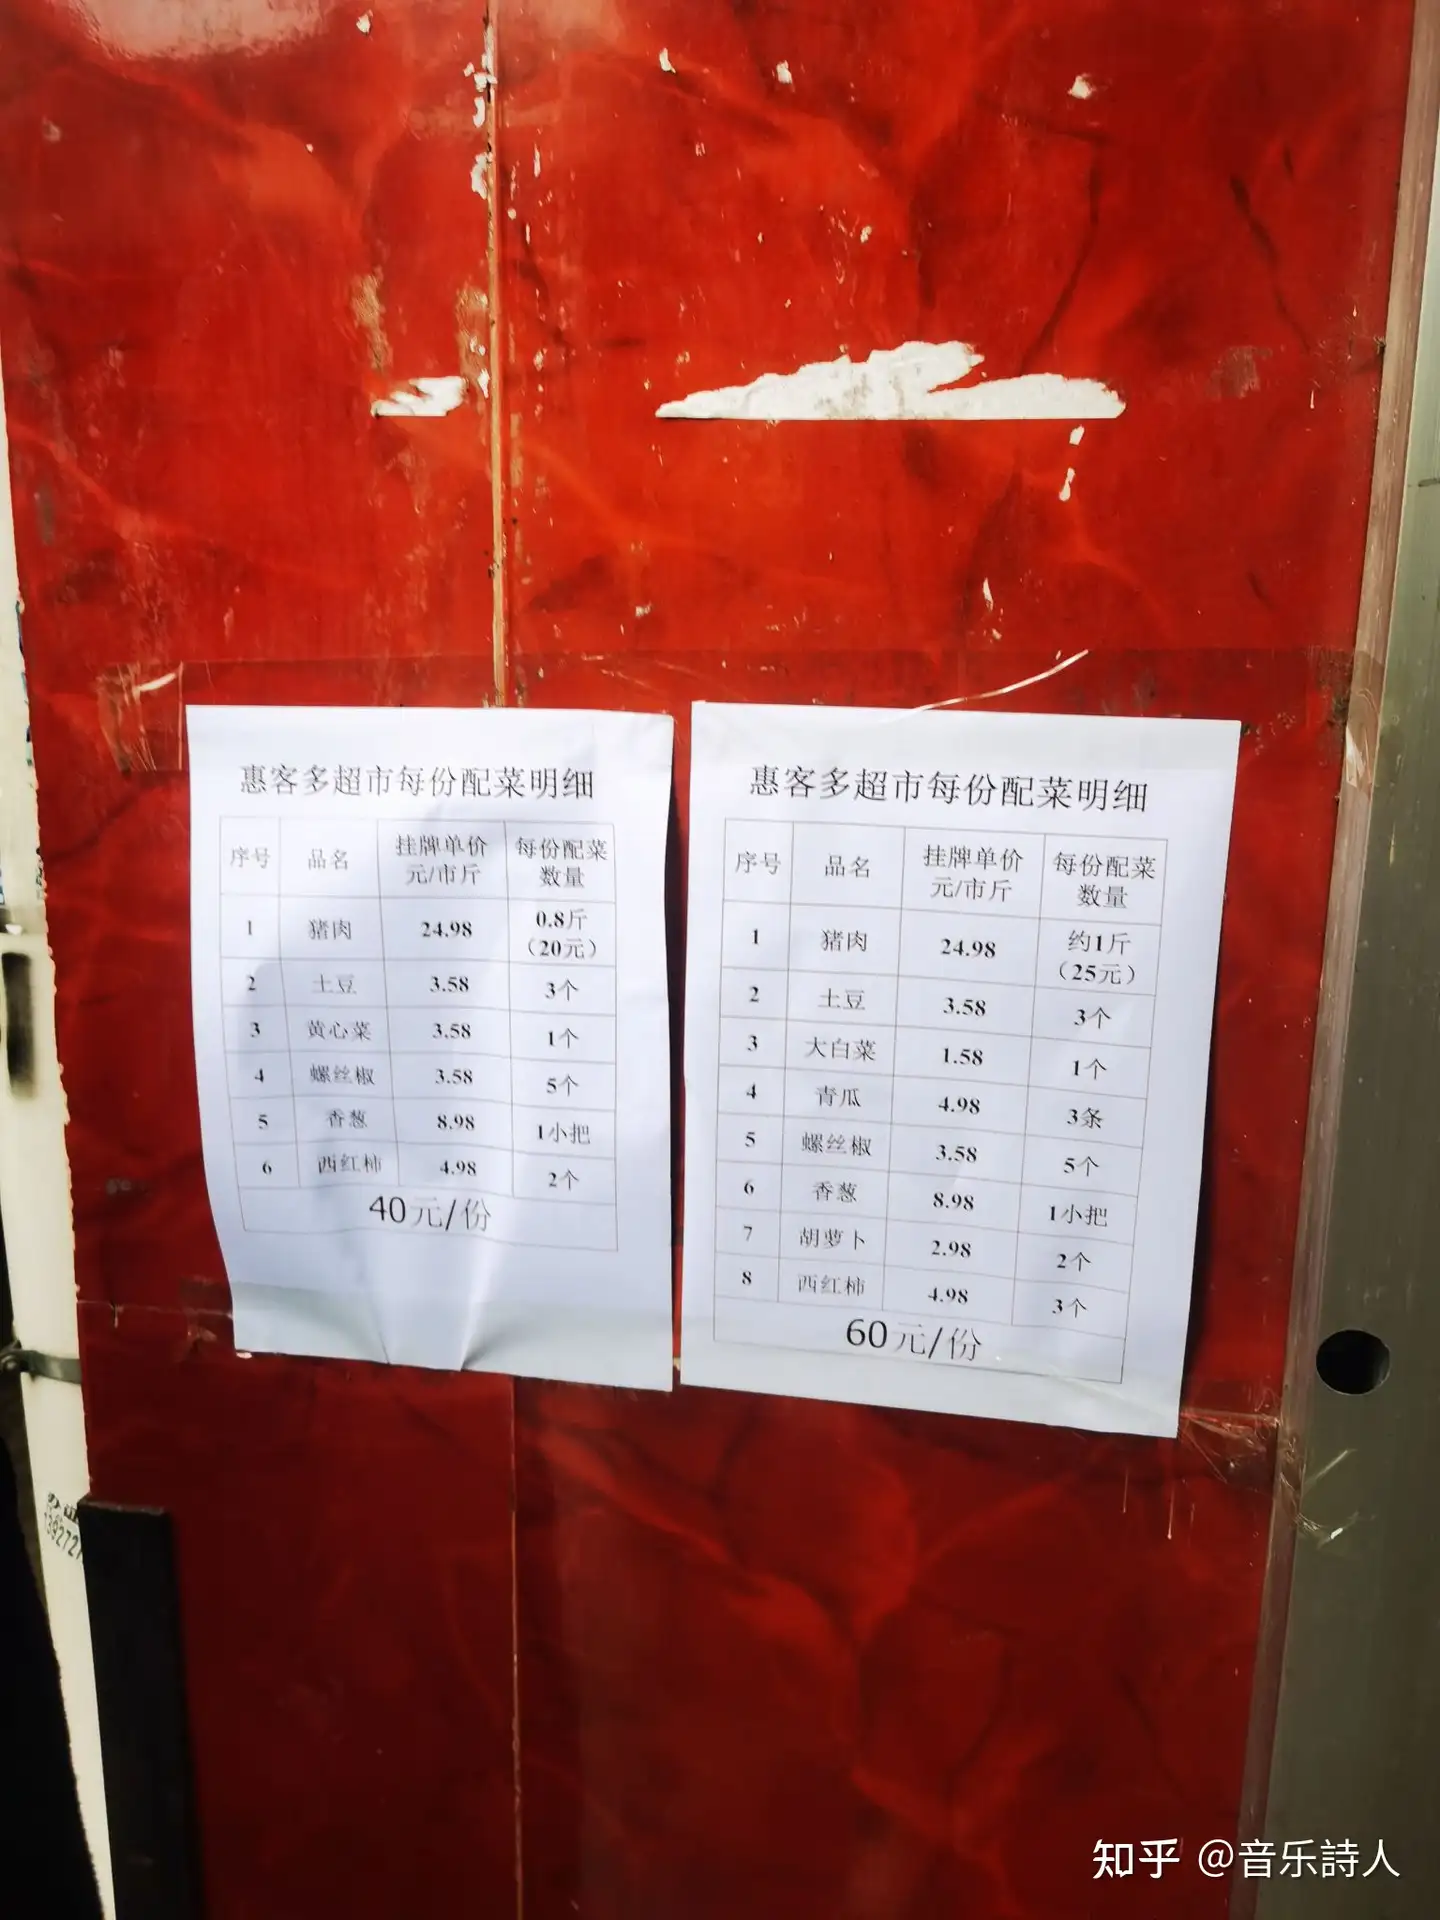 11 月 25 日广东新增本土感染病例「991+7405」例，目前当地疫情情况如何？